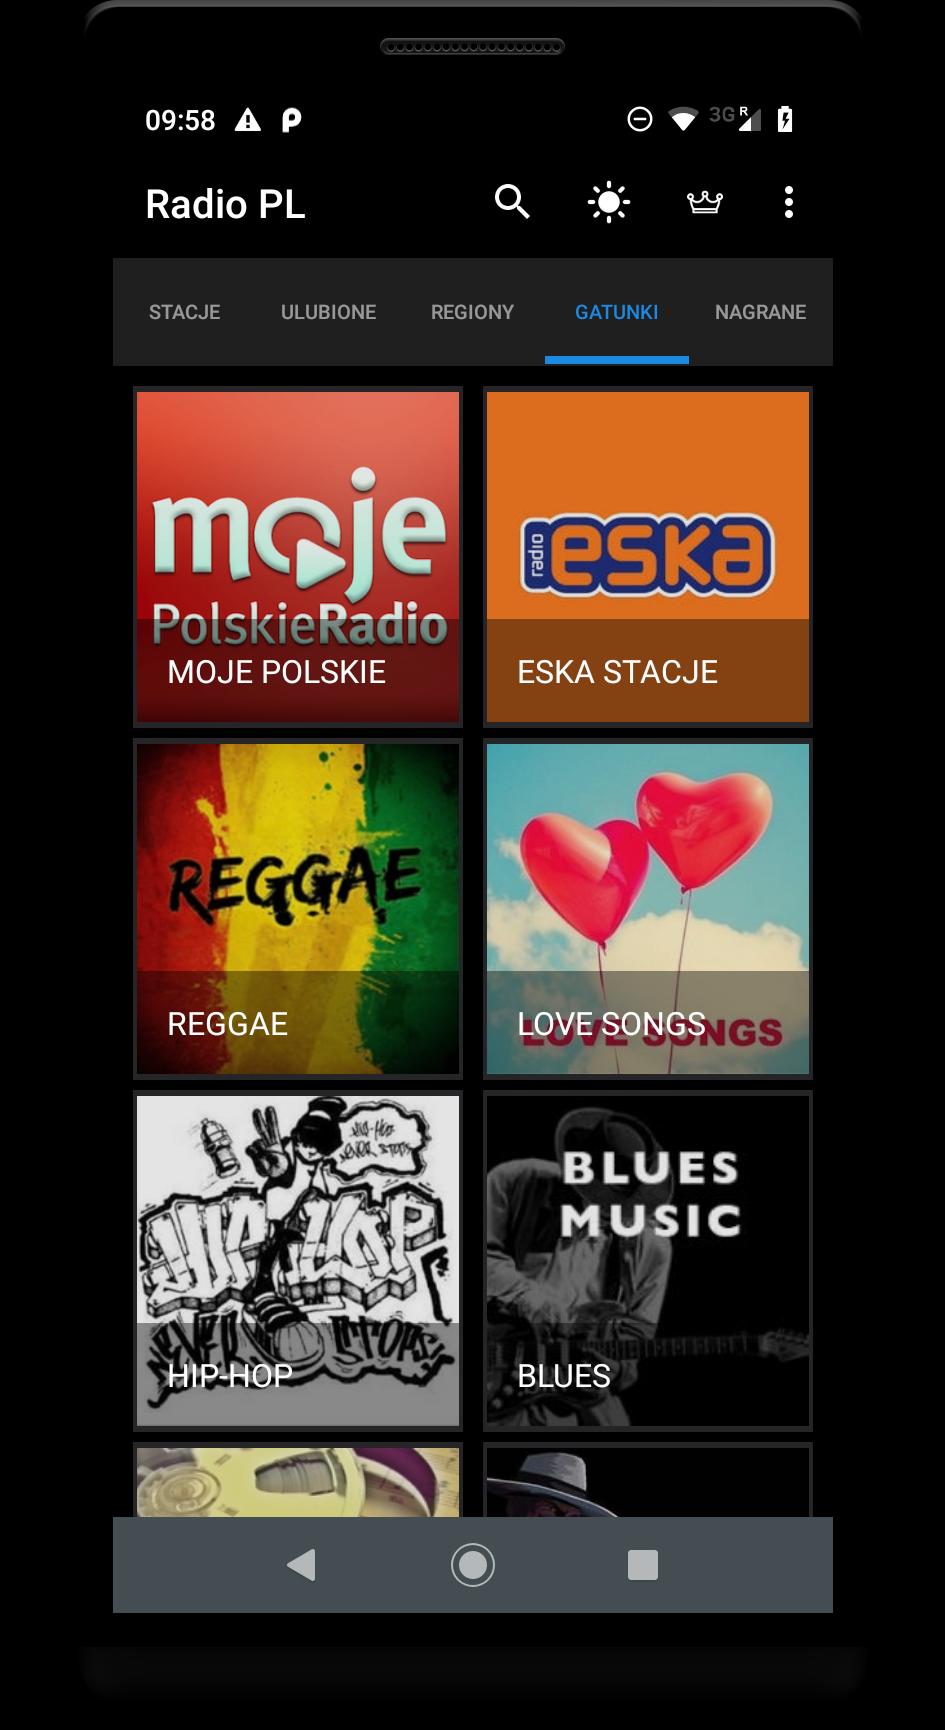 Radio Polska - Polskie stacje radiowe for Android - APK Download